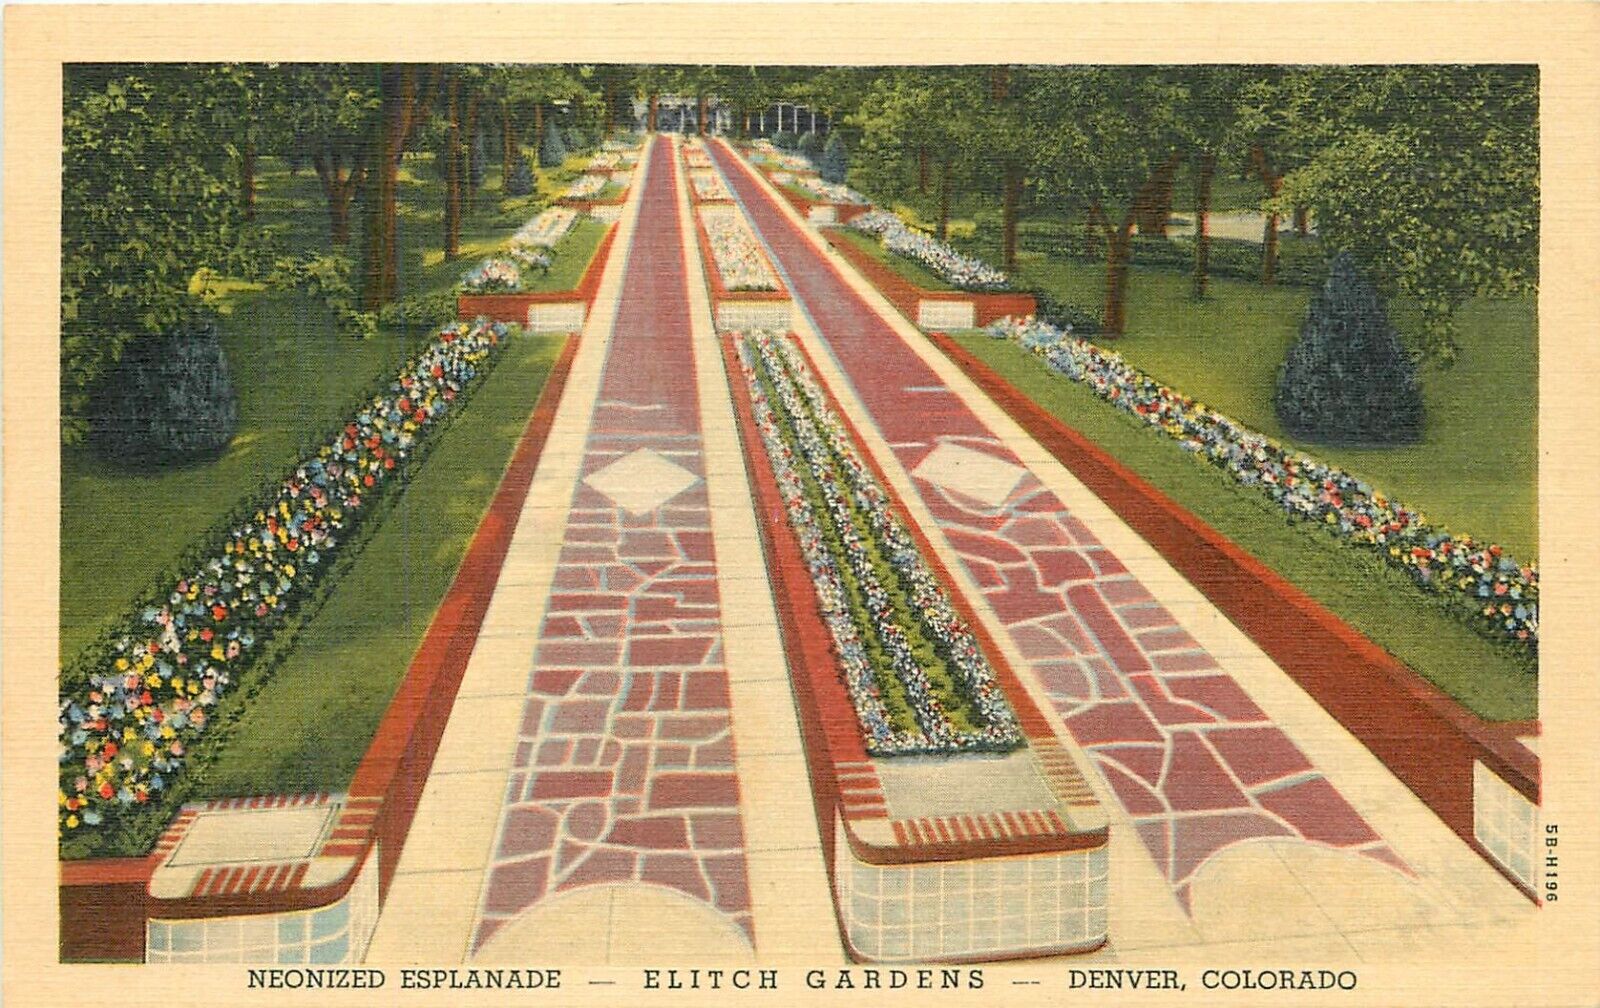 c1940s Elitch Gardens Amusement Park Neonized Esplanade Denver Colorado Postcard